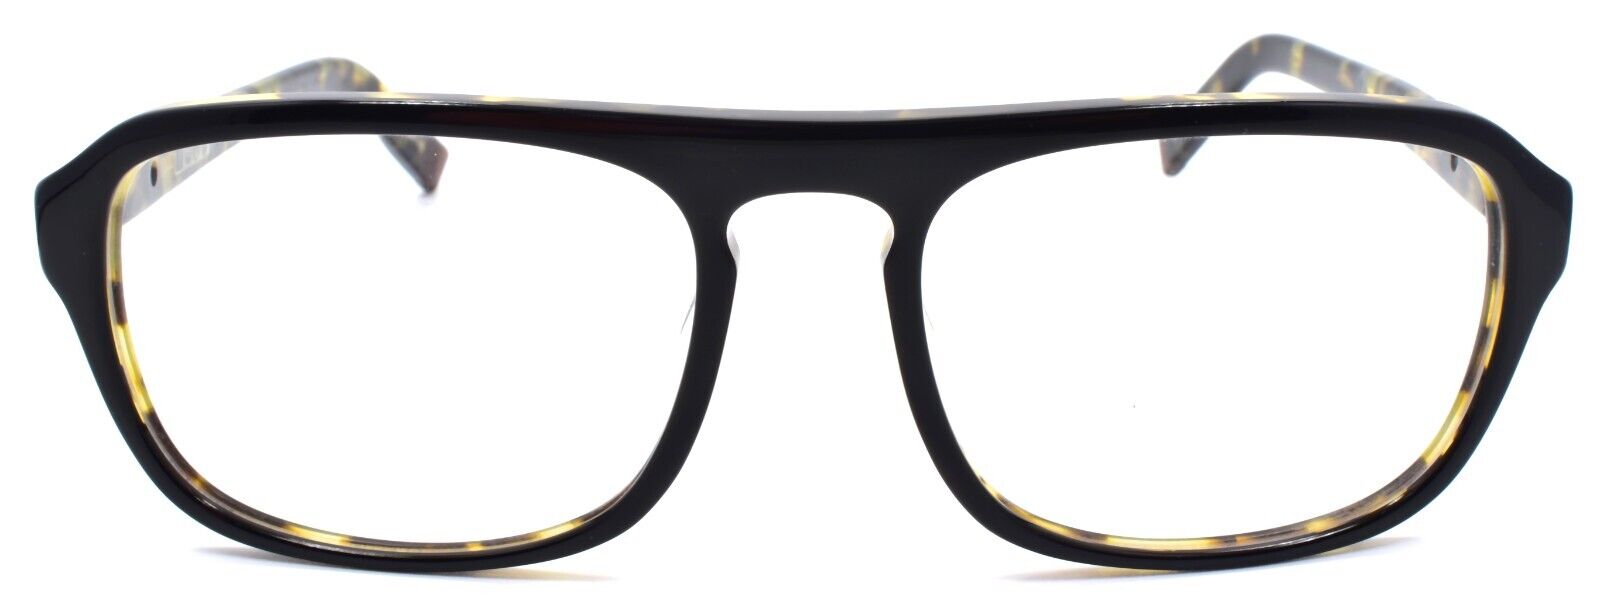 2-John Varvatos V362 UF Men's Eyeglasses Frames 55-18-145 Black Tortoise Japan-751286266146-IKSpecs